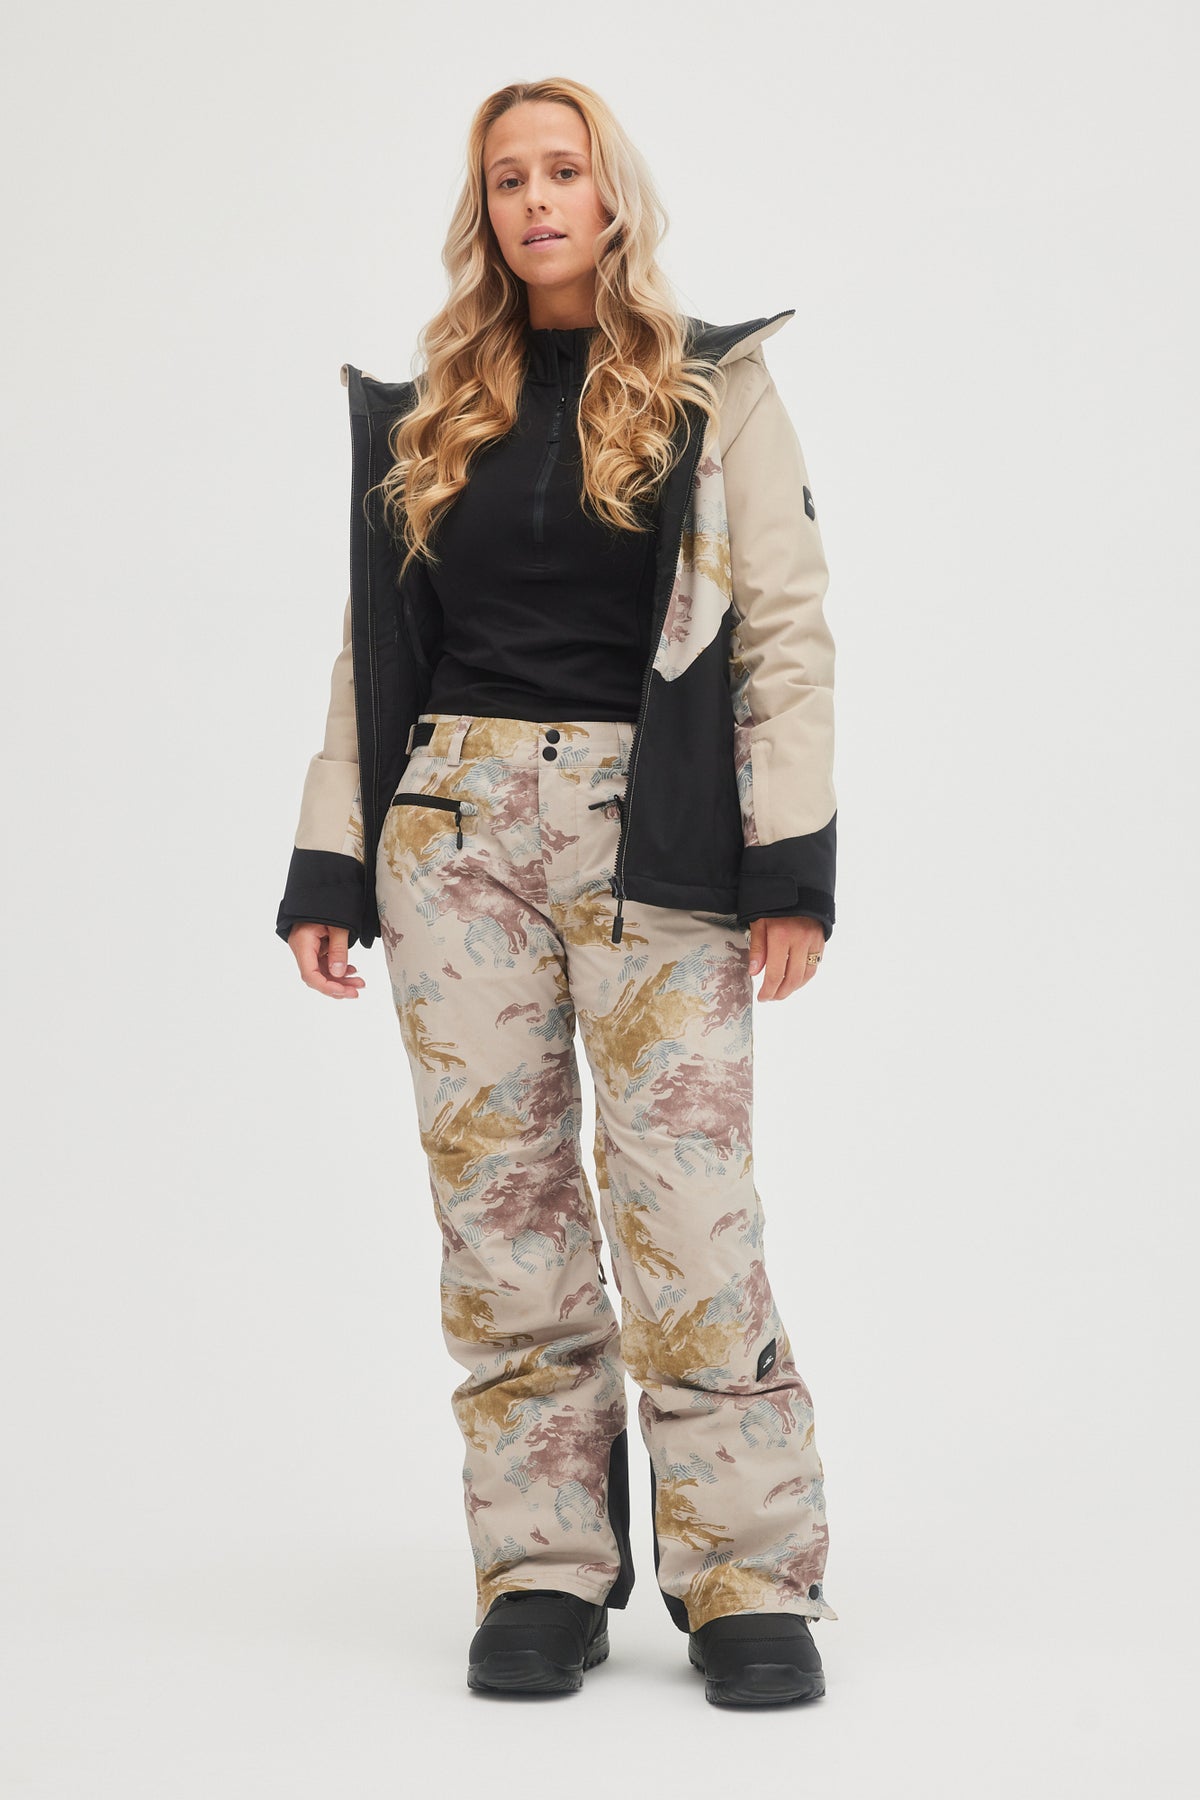 O'Neill High Waist Shell Bib Snowboard Pants (Women's)